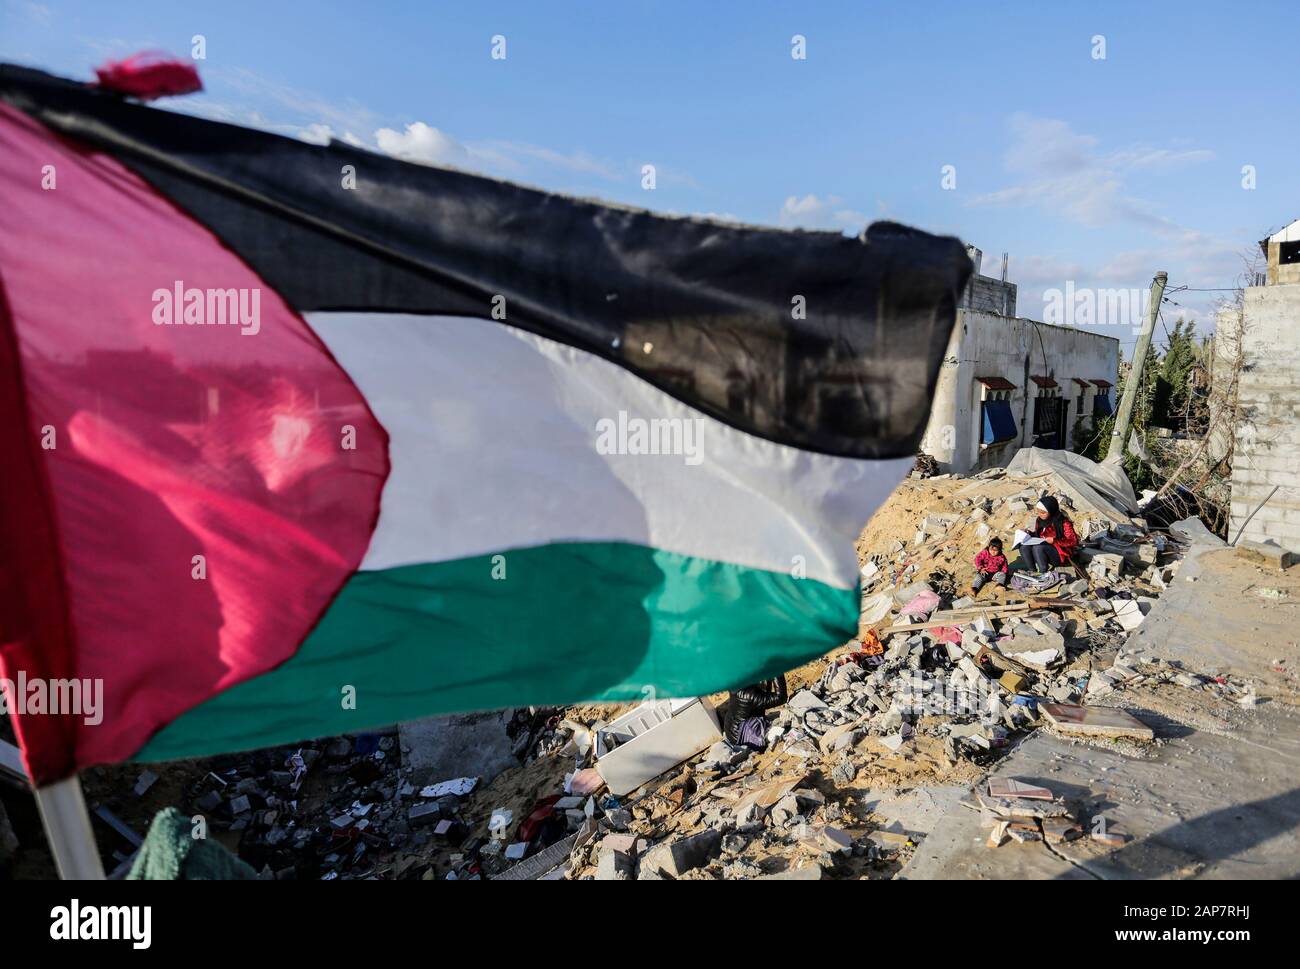 Ciudad De Gaza, Palestina. 19 de enero de 2020. Escombros en la casa destruida de Hamouda Abu Amra. La familia Abu Umrah, formada por 19 personas, perdió su casa de cinco pisos después de una incursión israelí en Gaza el 13 de noviembre de 2019. Crédito: Sopa Images Limited/Alamy Live News Foto de stock